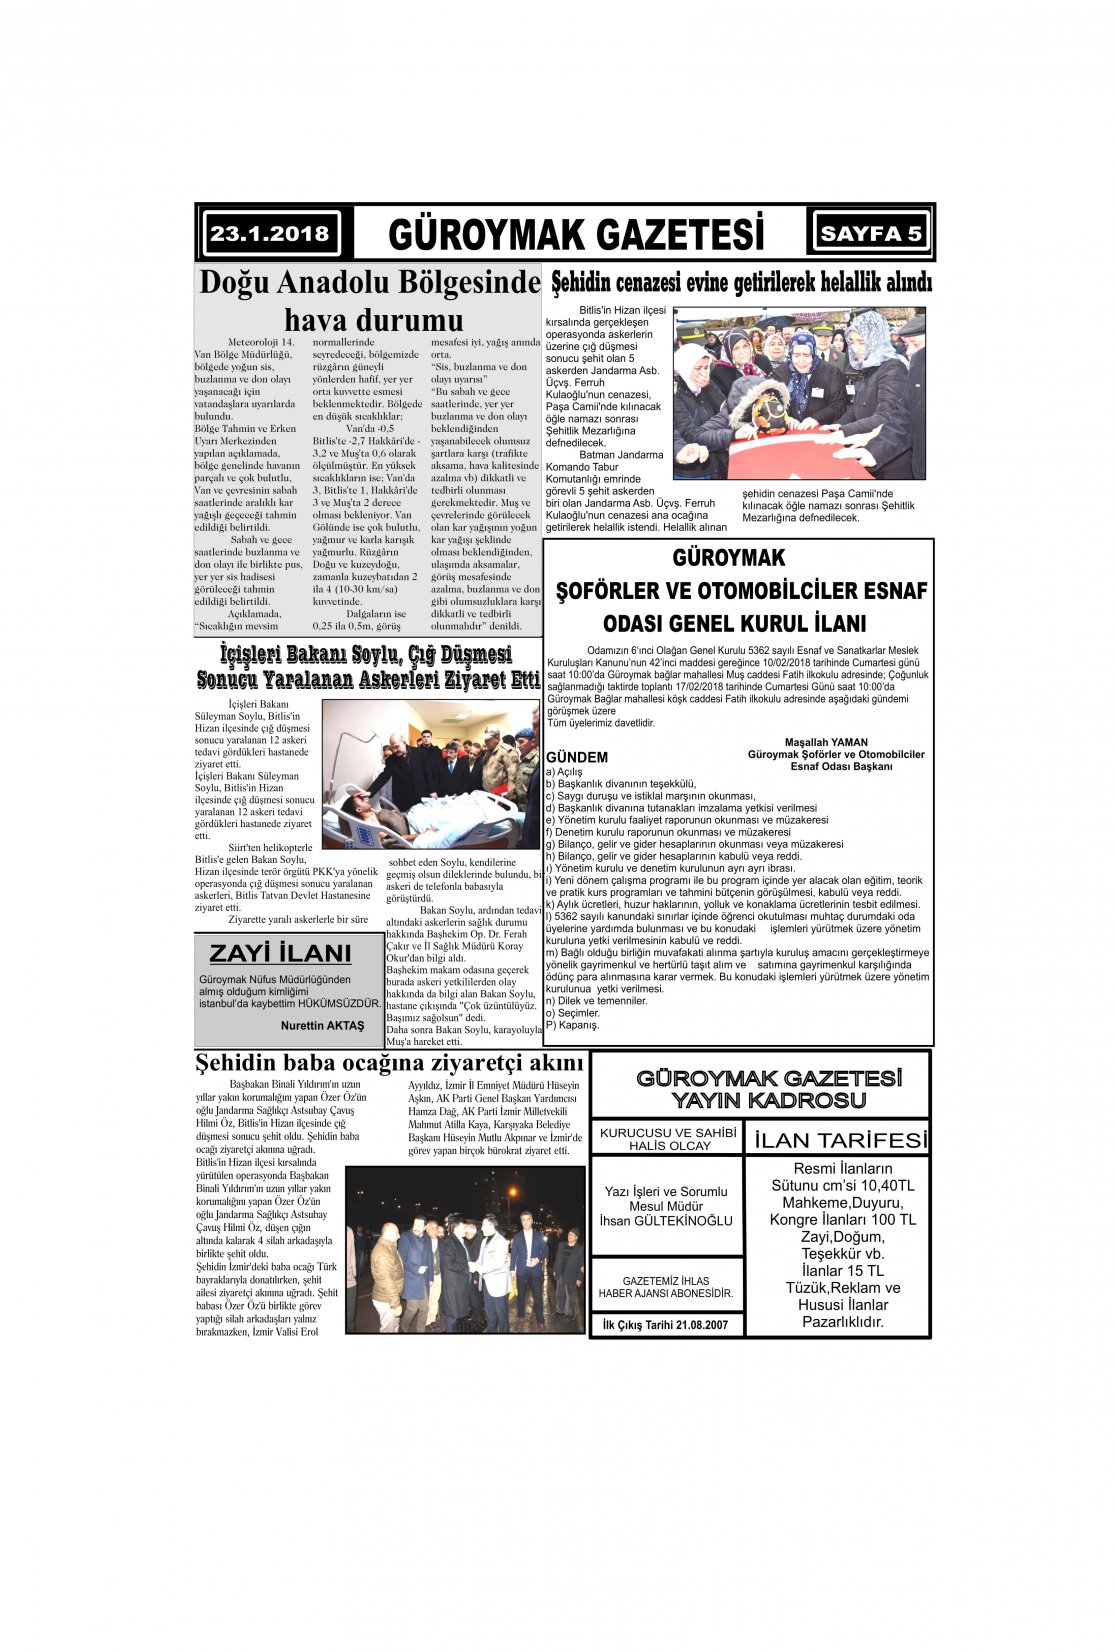 Güroymak Gazetesi 5-1.jpg Sayılı Gazete Küpürü